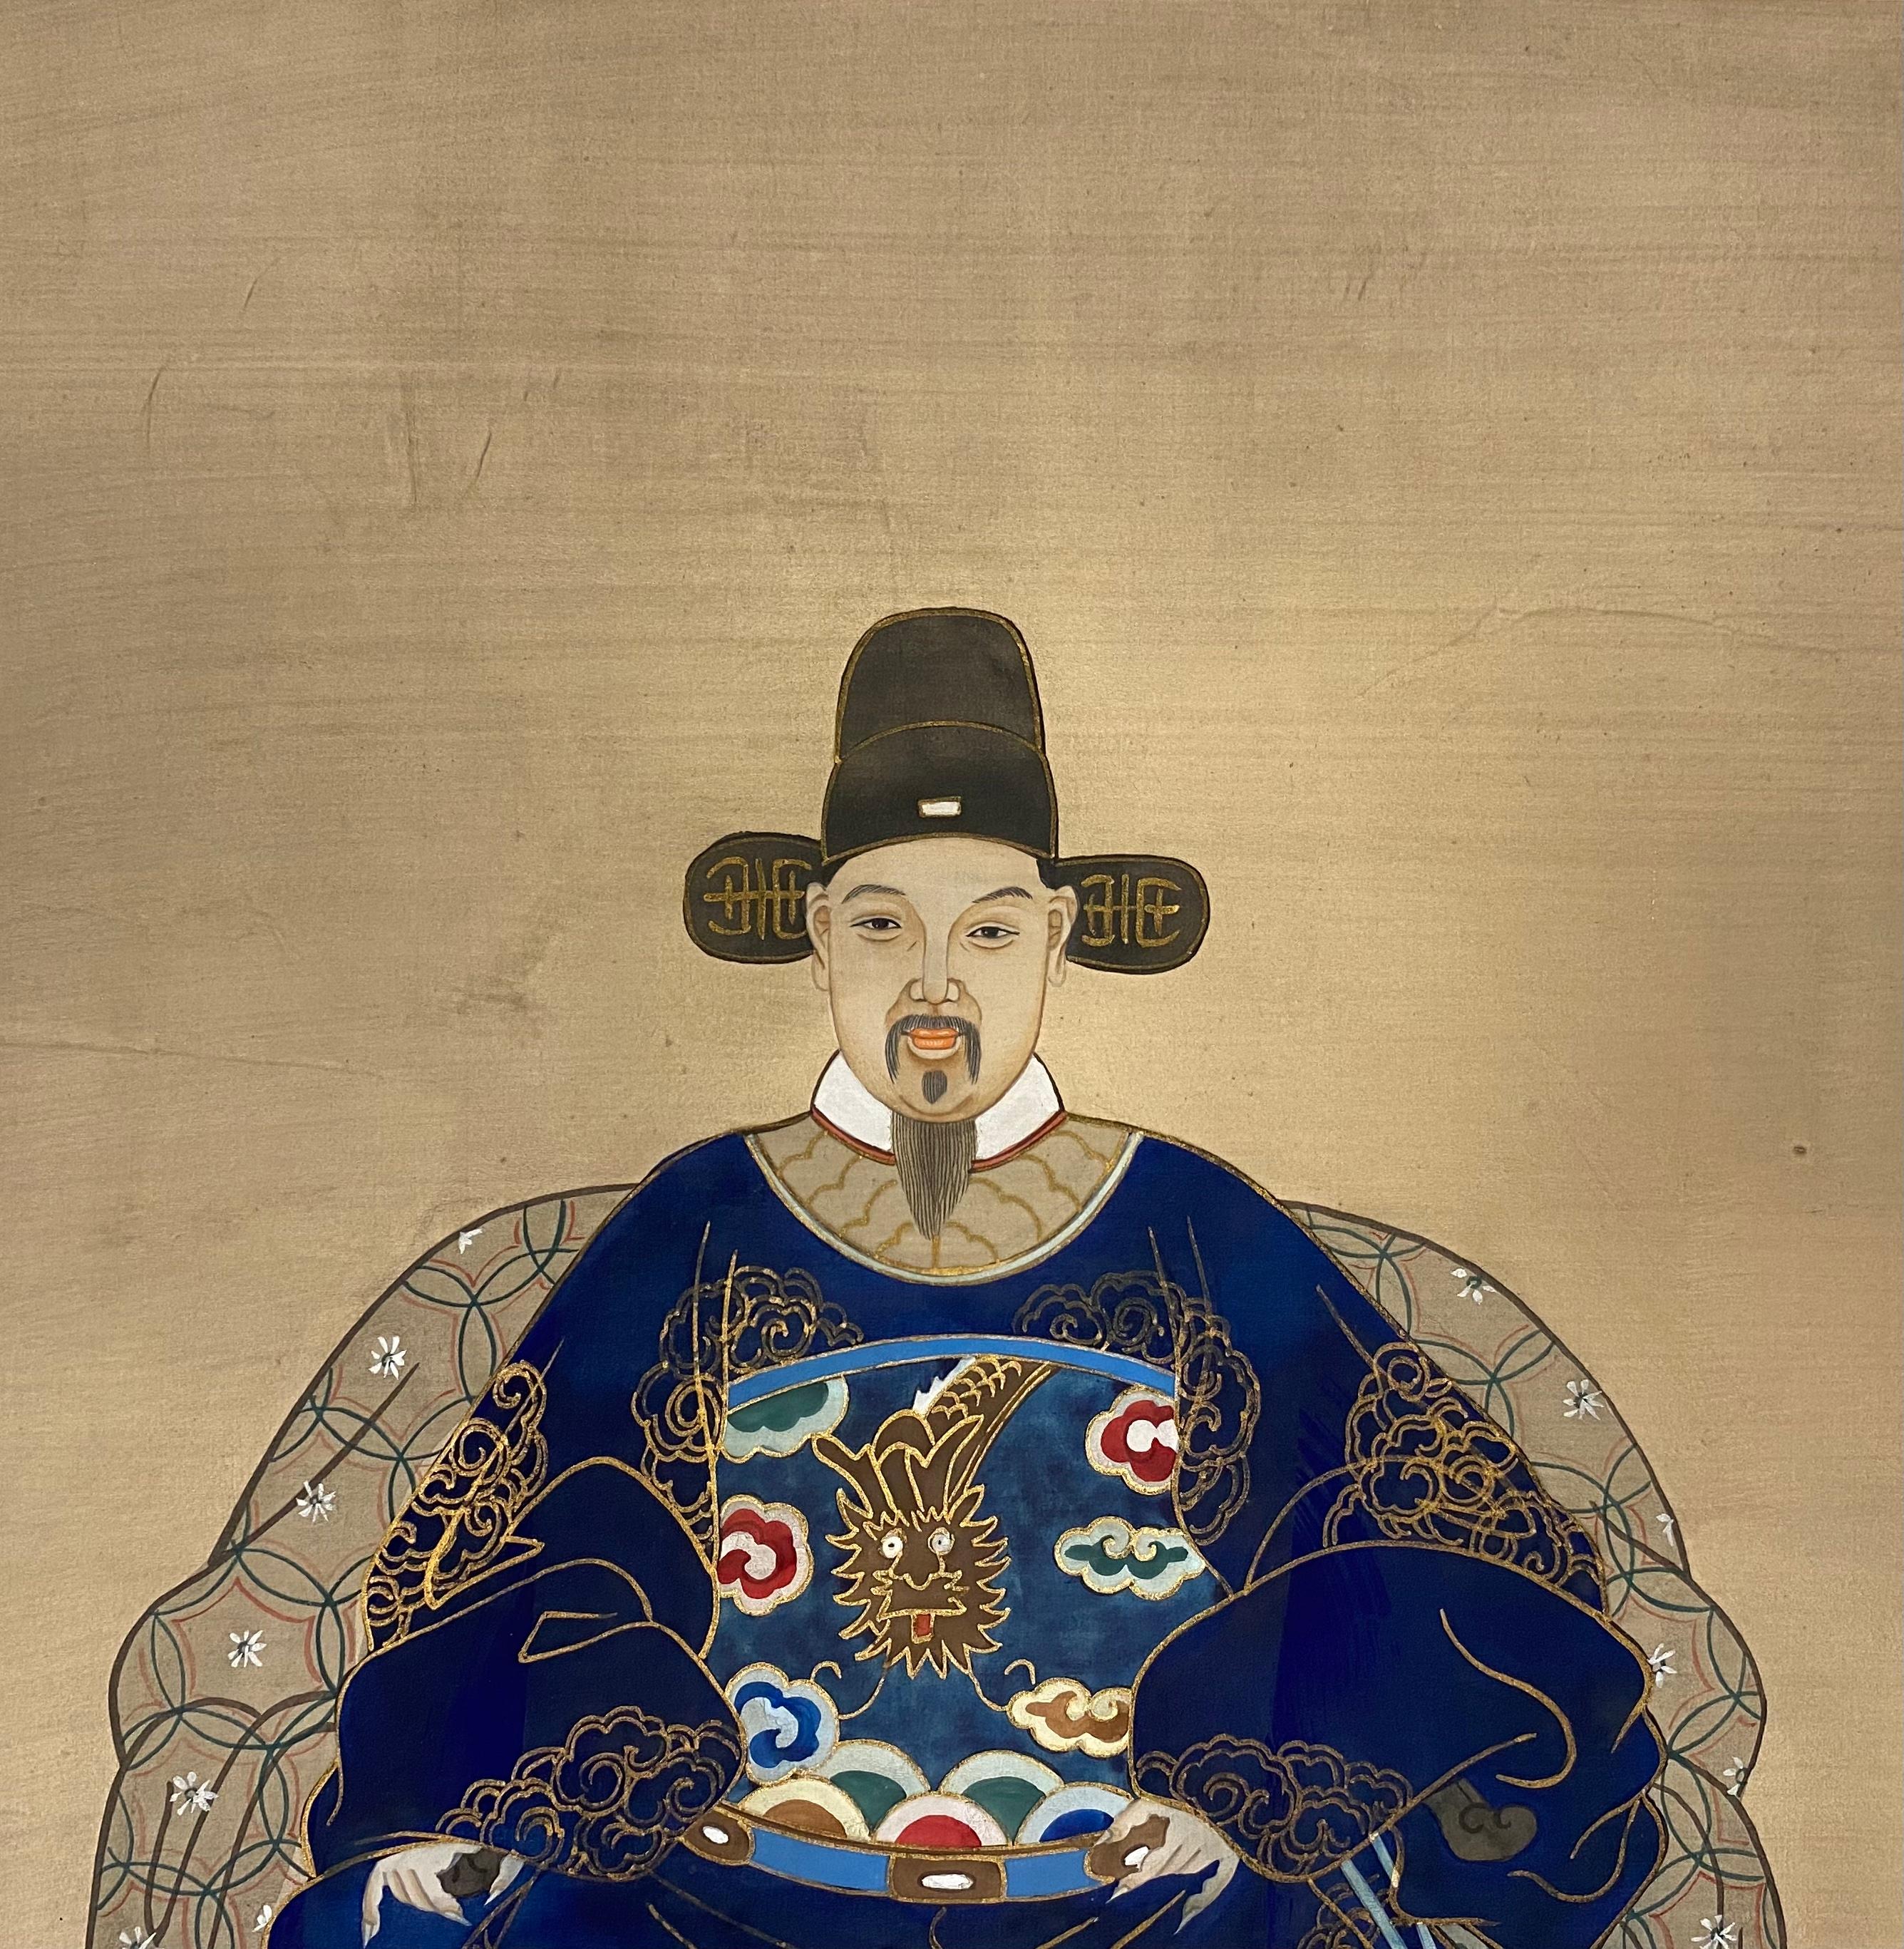 Peinture ancienne du XIXe siècle sur soie représentant un empereur chinois de la dynastie Ming.

Magnifiquement exécuté avec de grands détails.  Œuvre originale peinte à la main, présentée dans un beau cadre.  

Les artisans chinois réalisaient